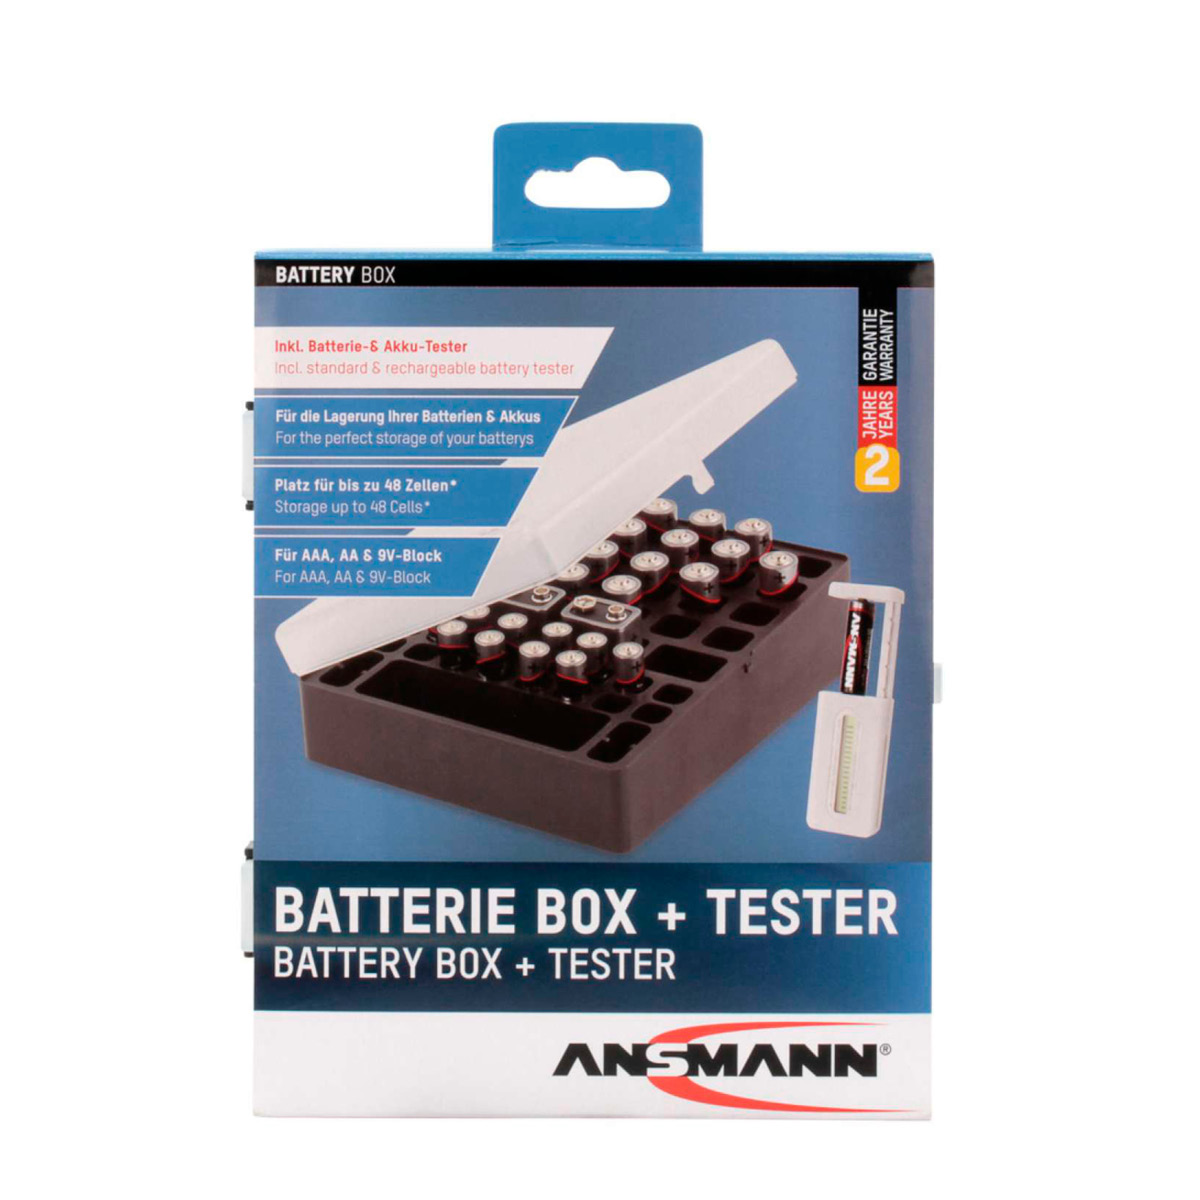 Ansmann Batteriebox 48 + Batterientester